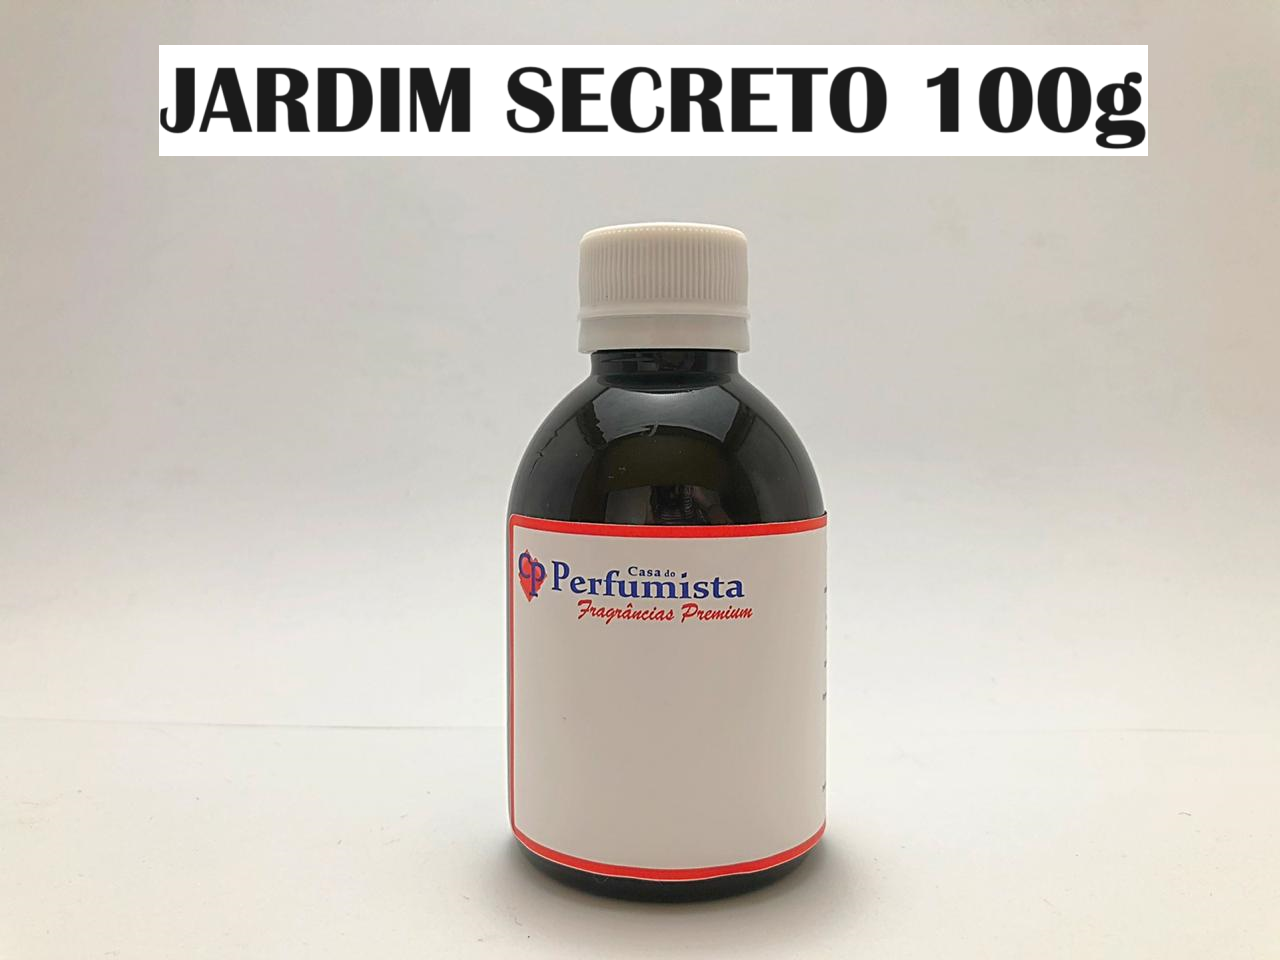 JARDIM SECRETO - 100g